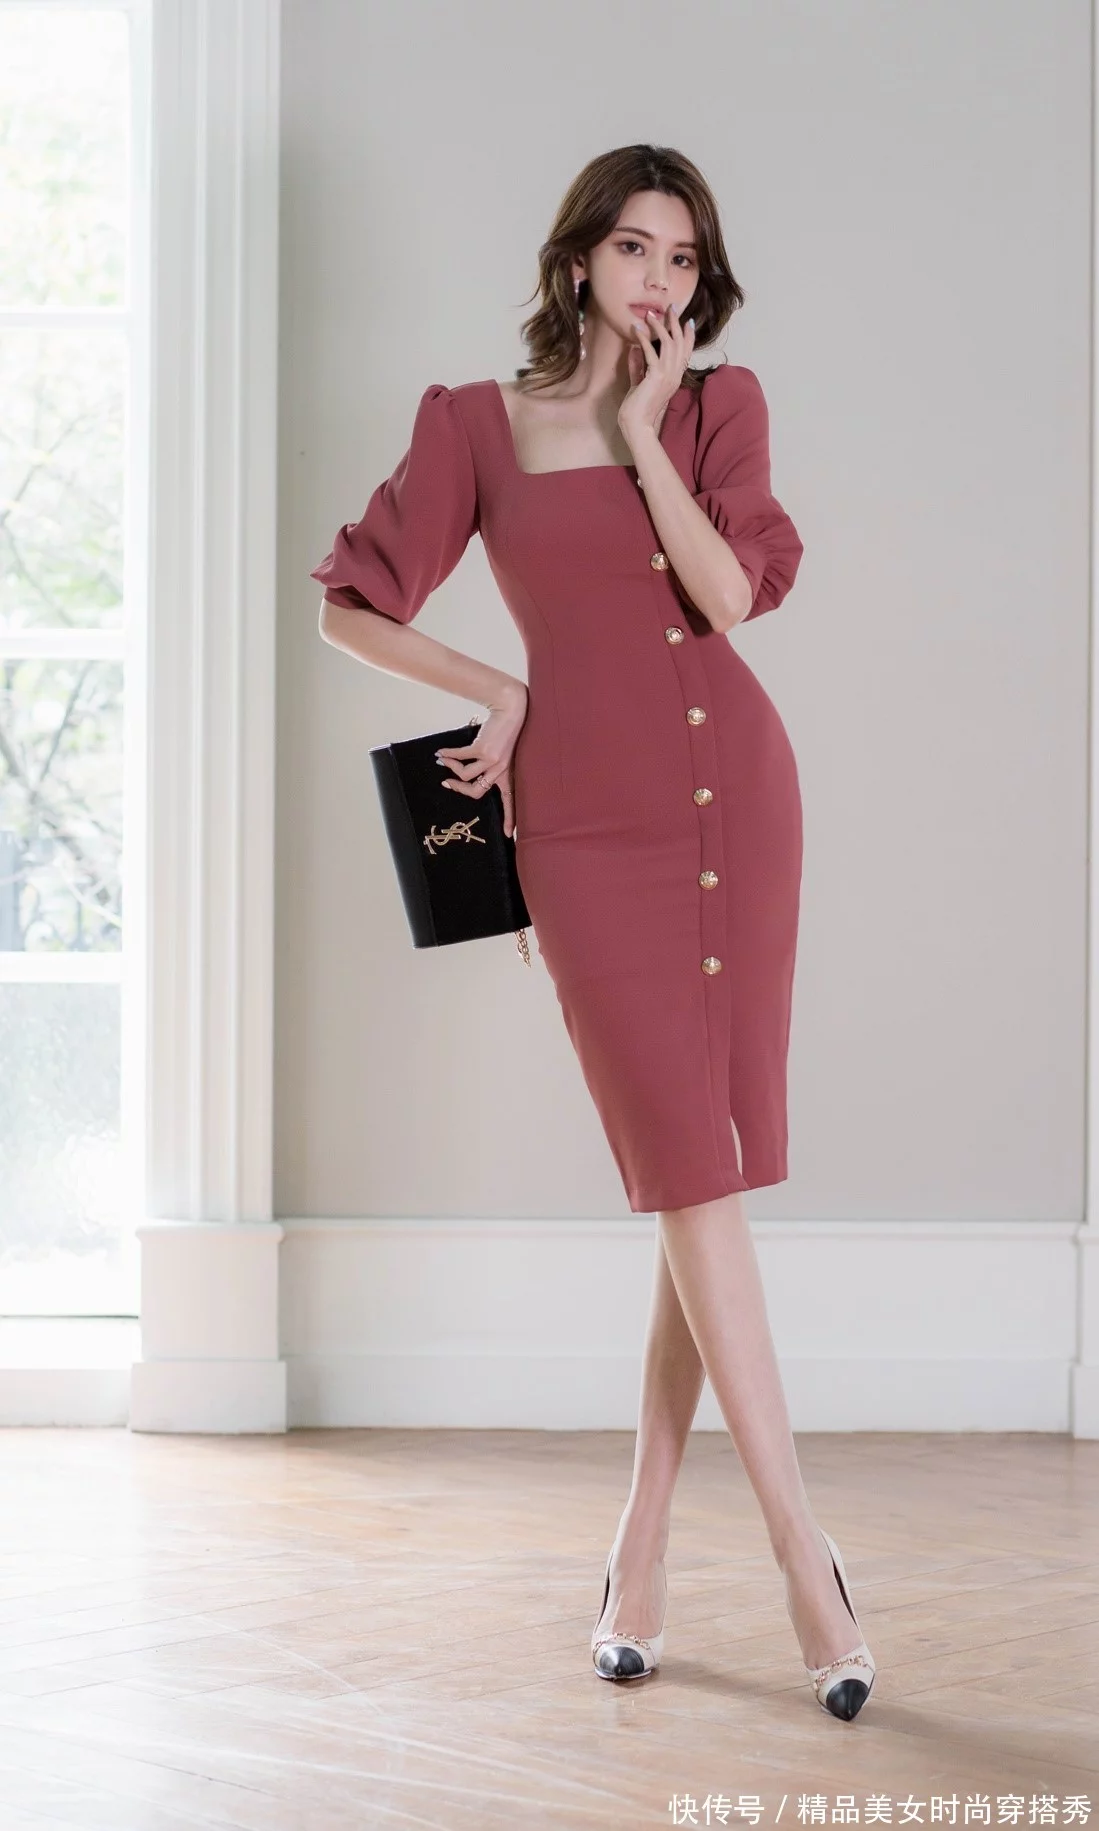 方开领设计的浅红色长款连衣裙优雅大气，很好的营造出精致的职场造型。